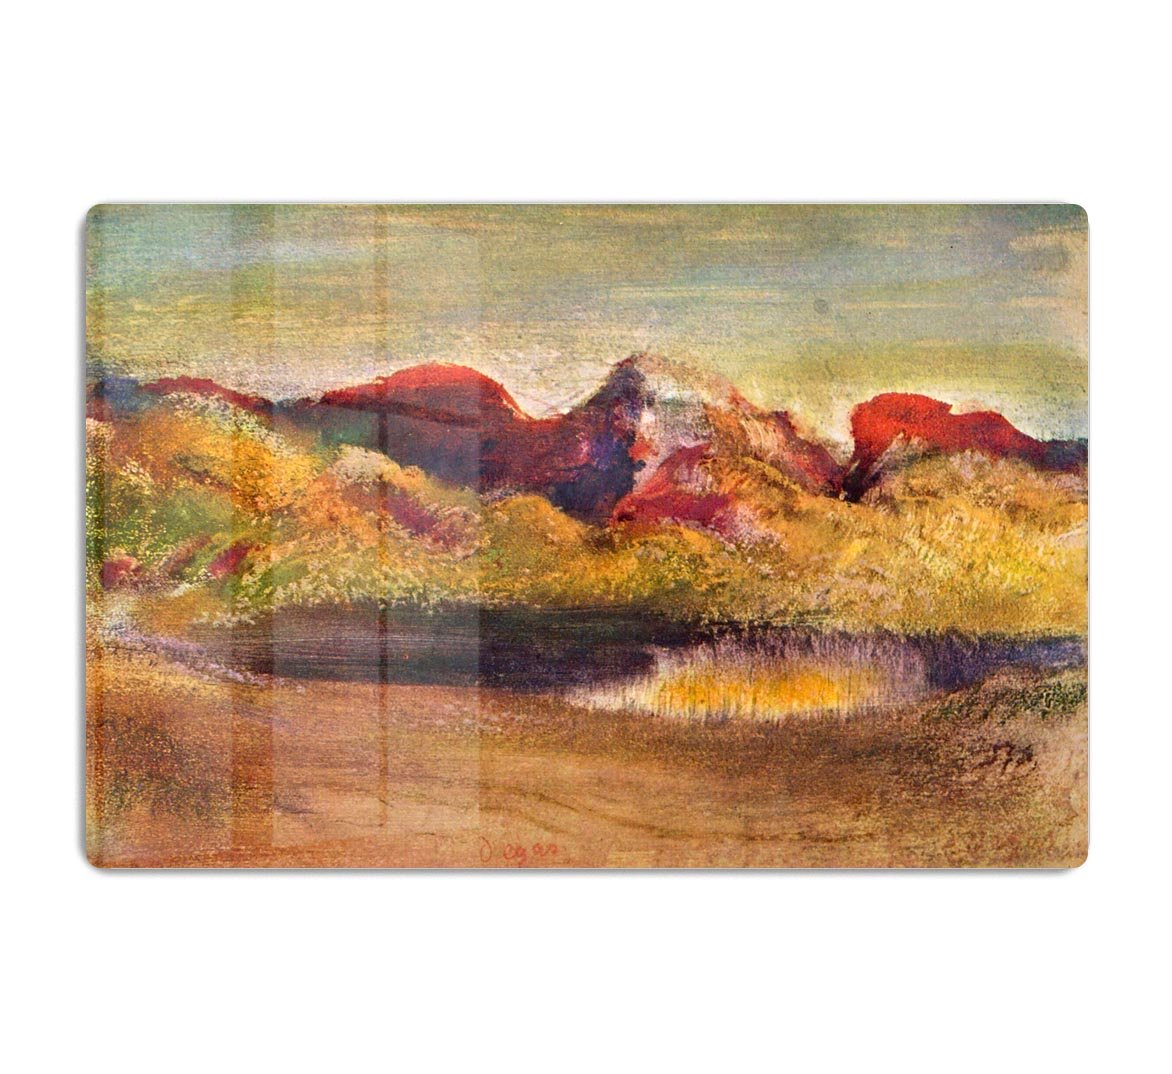 Lake and mountains by Degas HD Metal Print - Canvas Art Rocks - 1